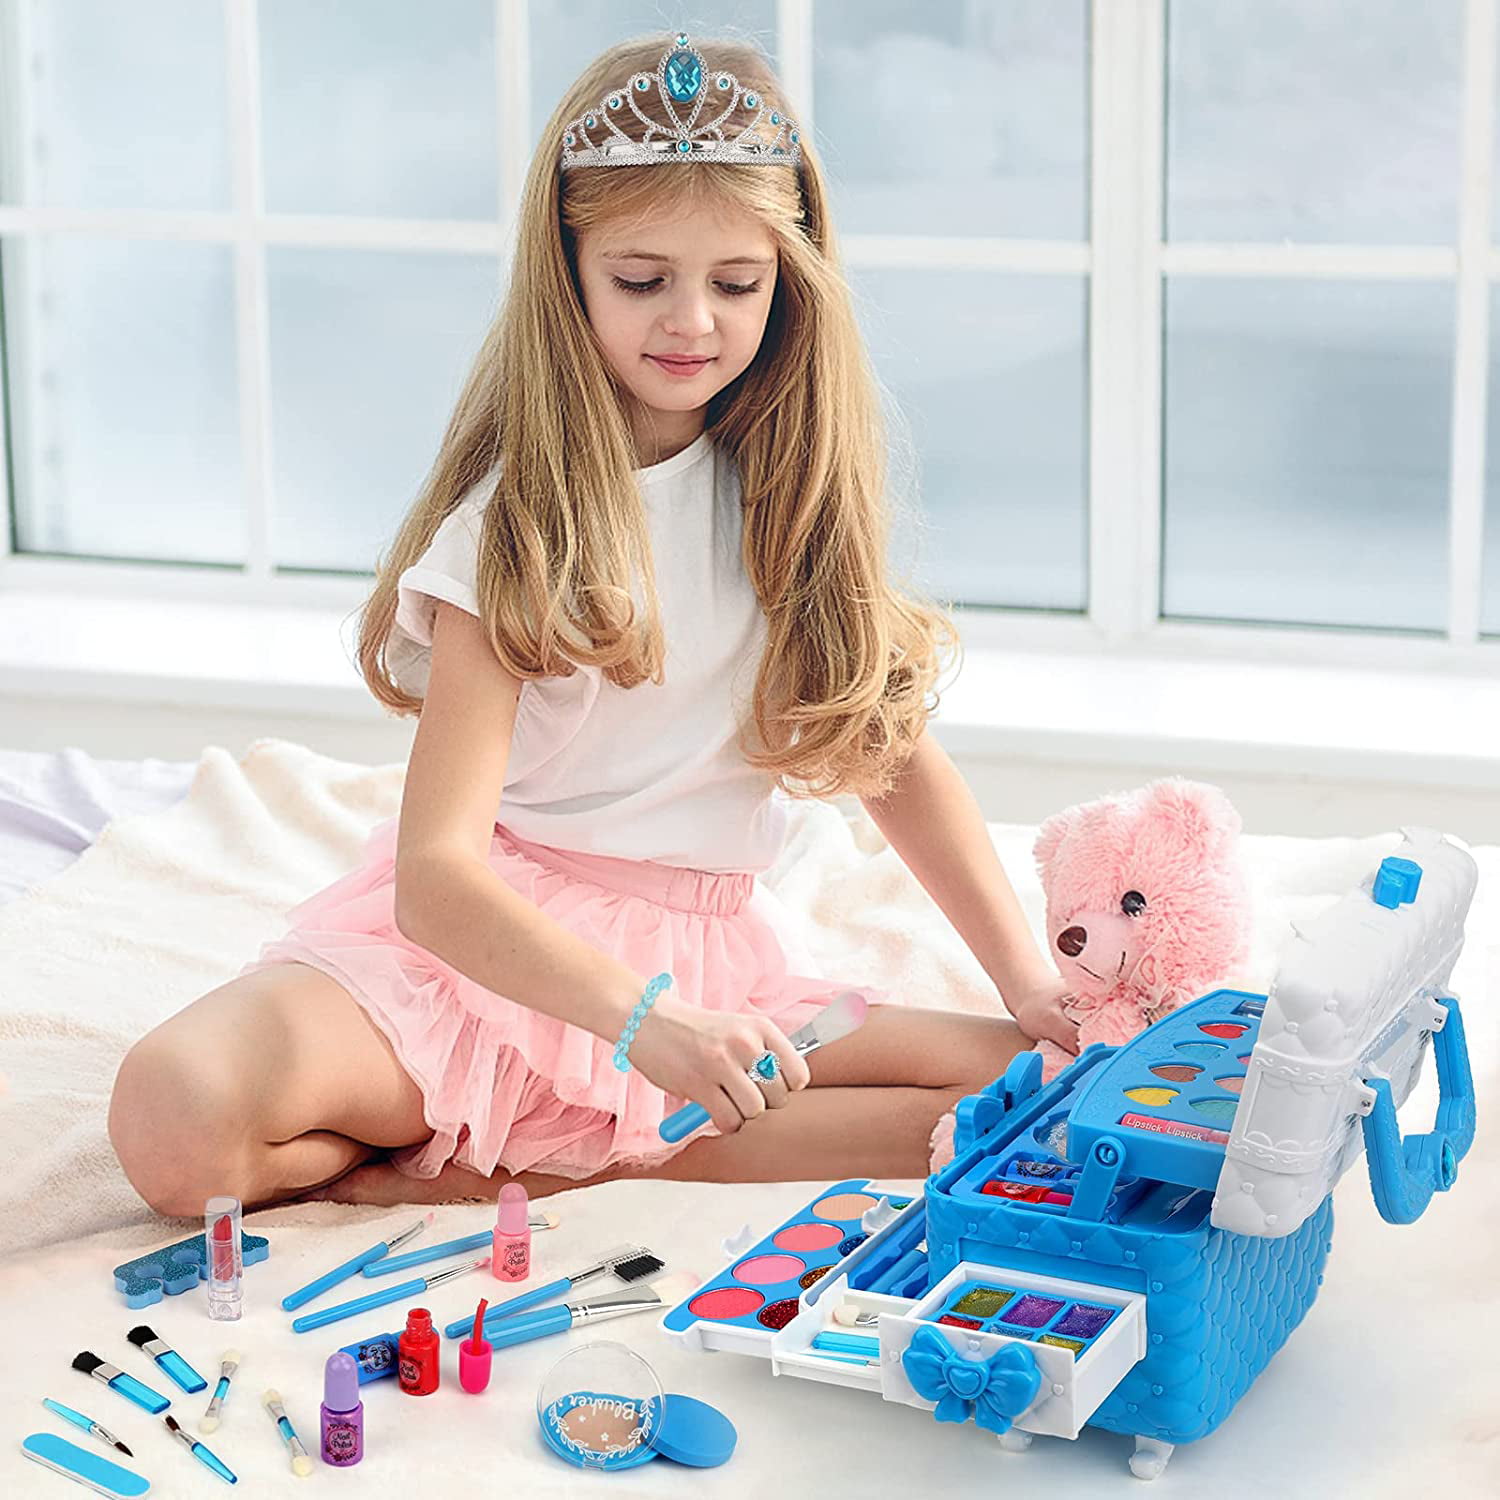 Toys for Girls - Sendida 60PCS in 1 Kids Washable Makeup Set for